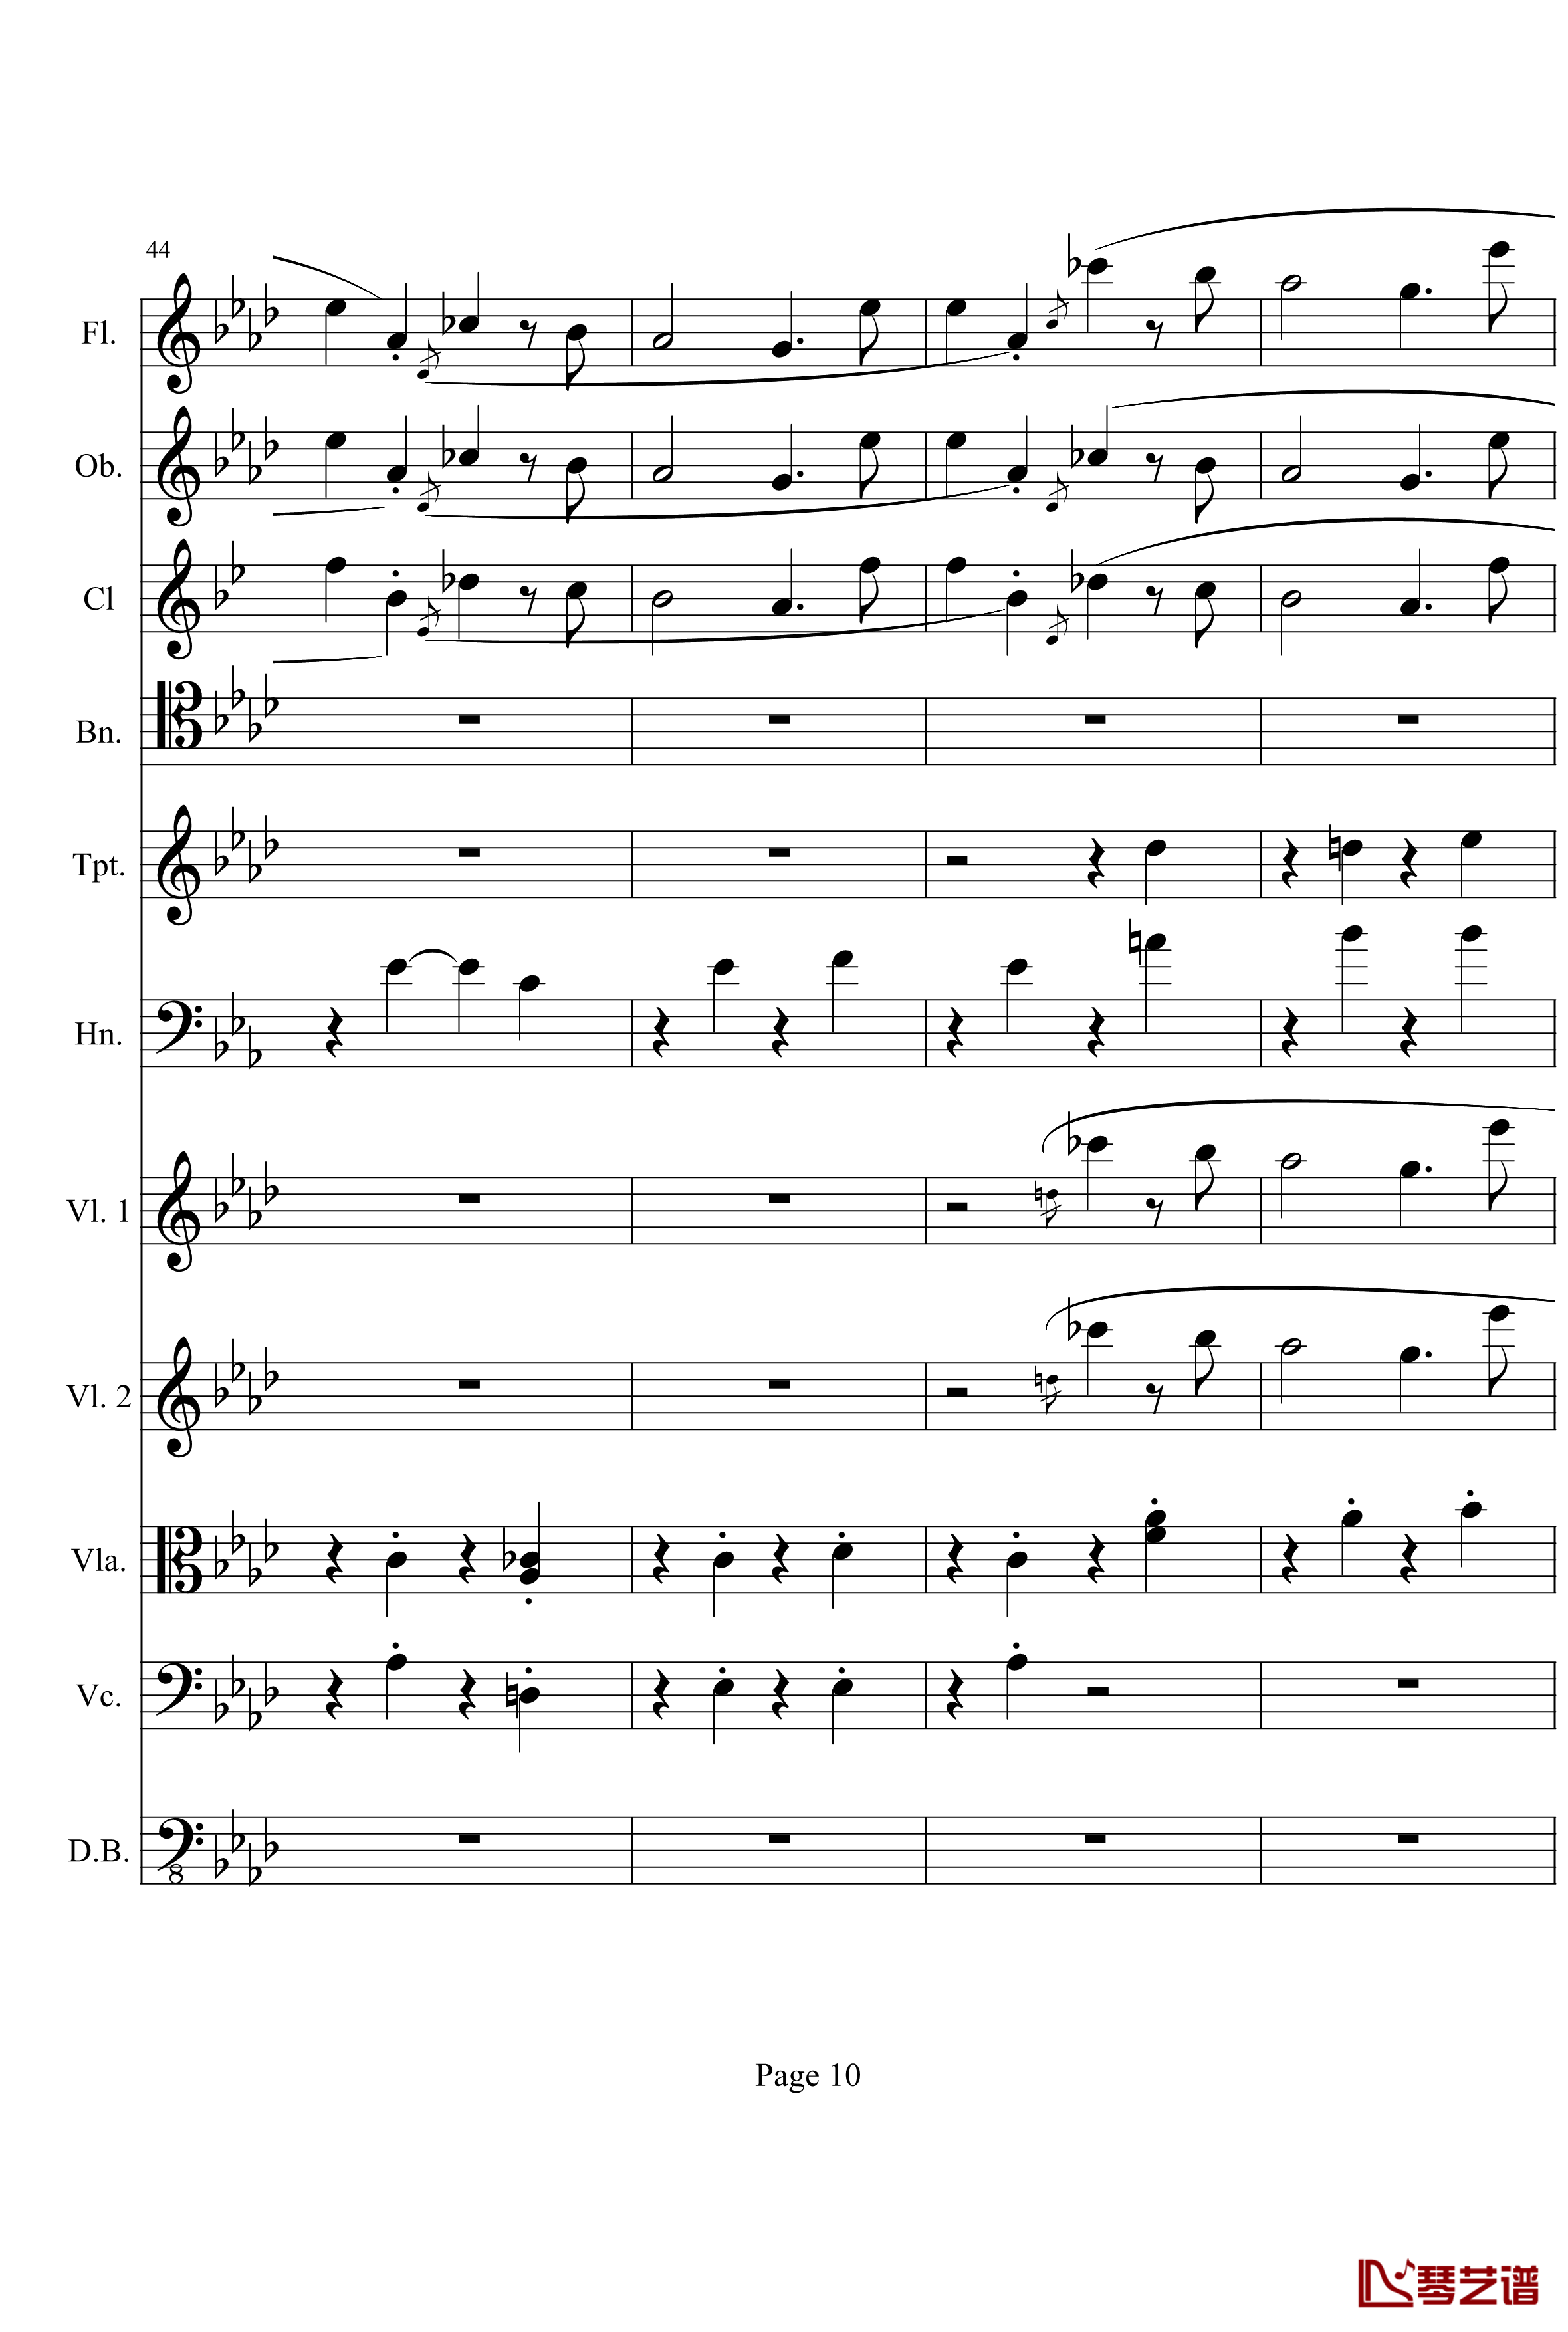 奏鸣曲之交响钢琴谱-第1首-Ⅰ-贝多芬-beethoven10